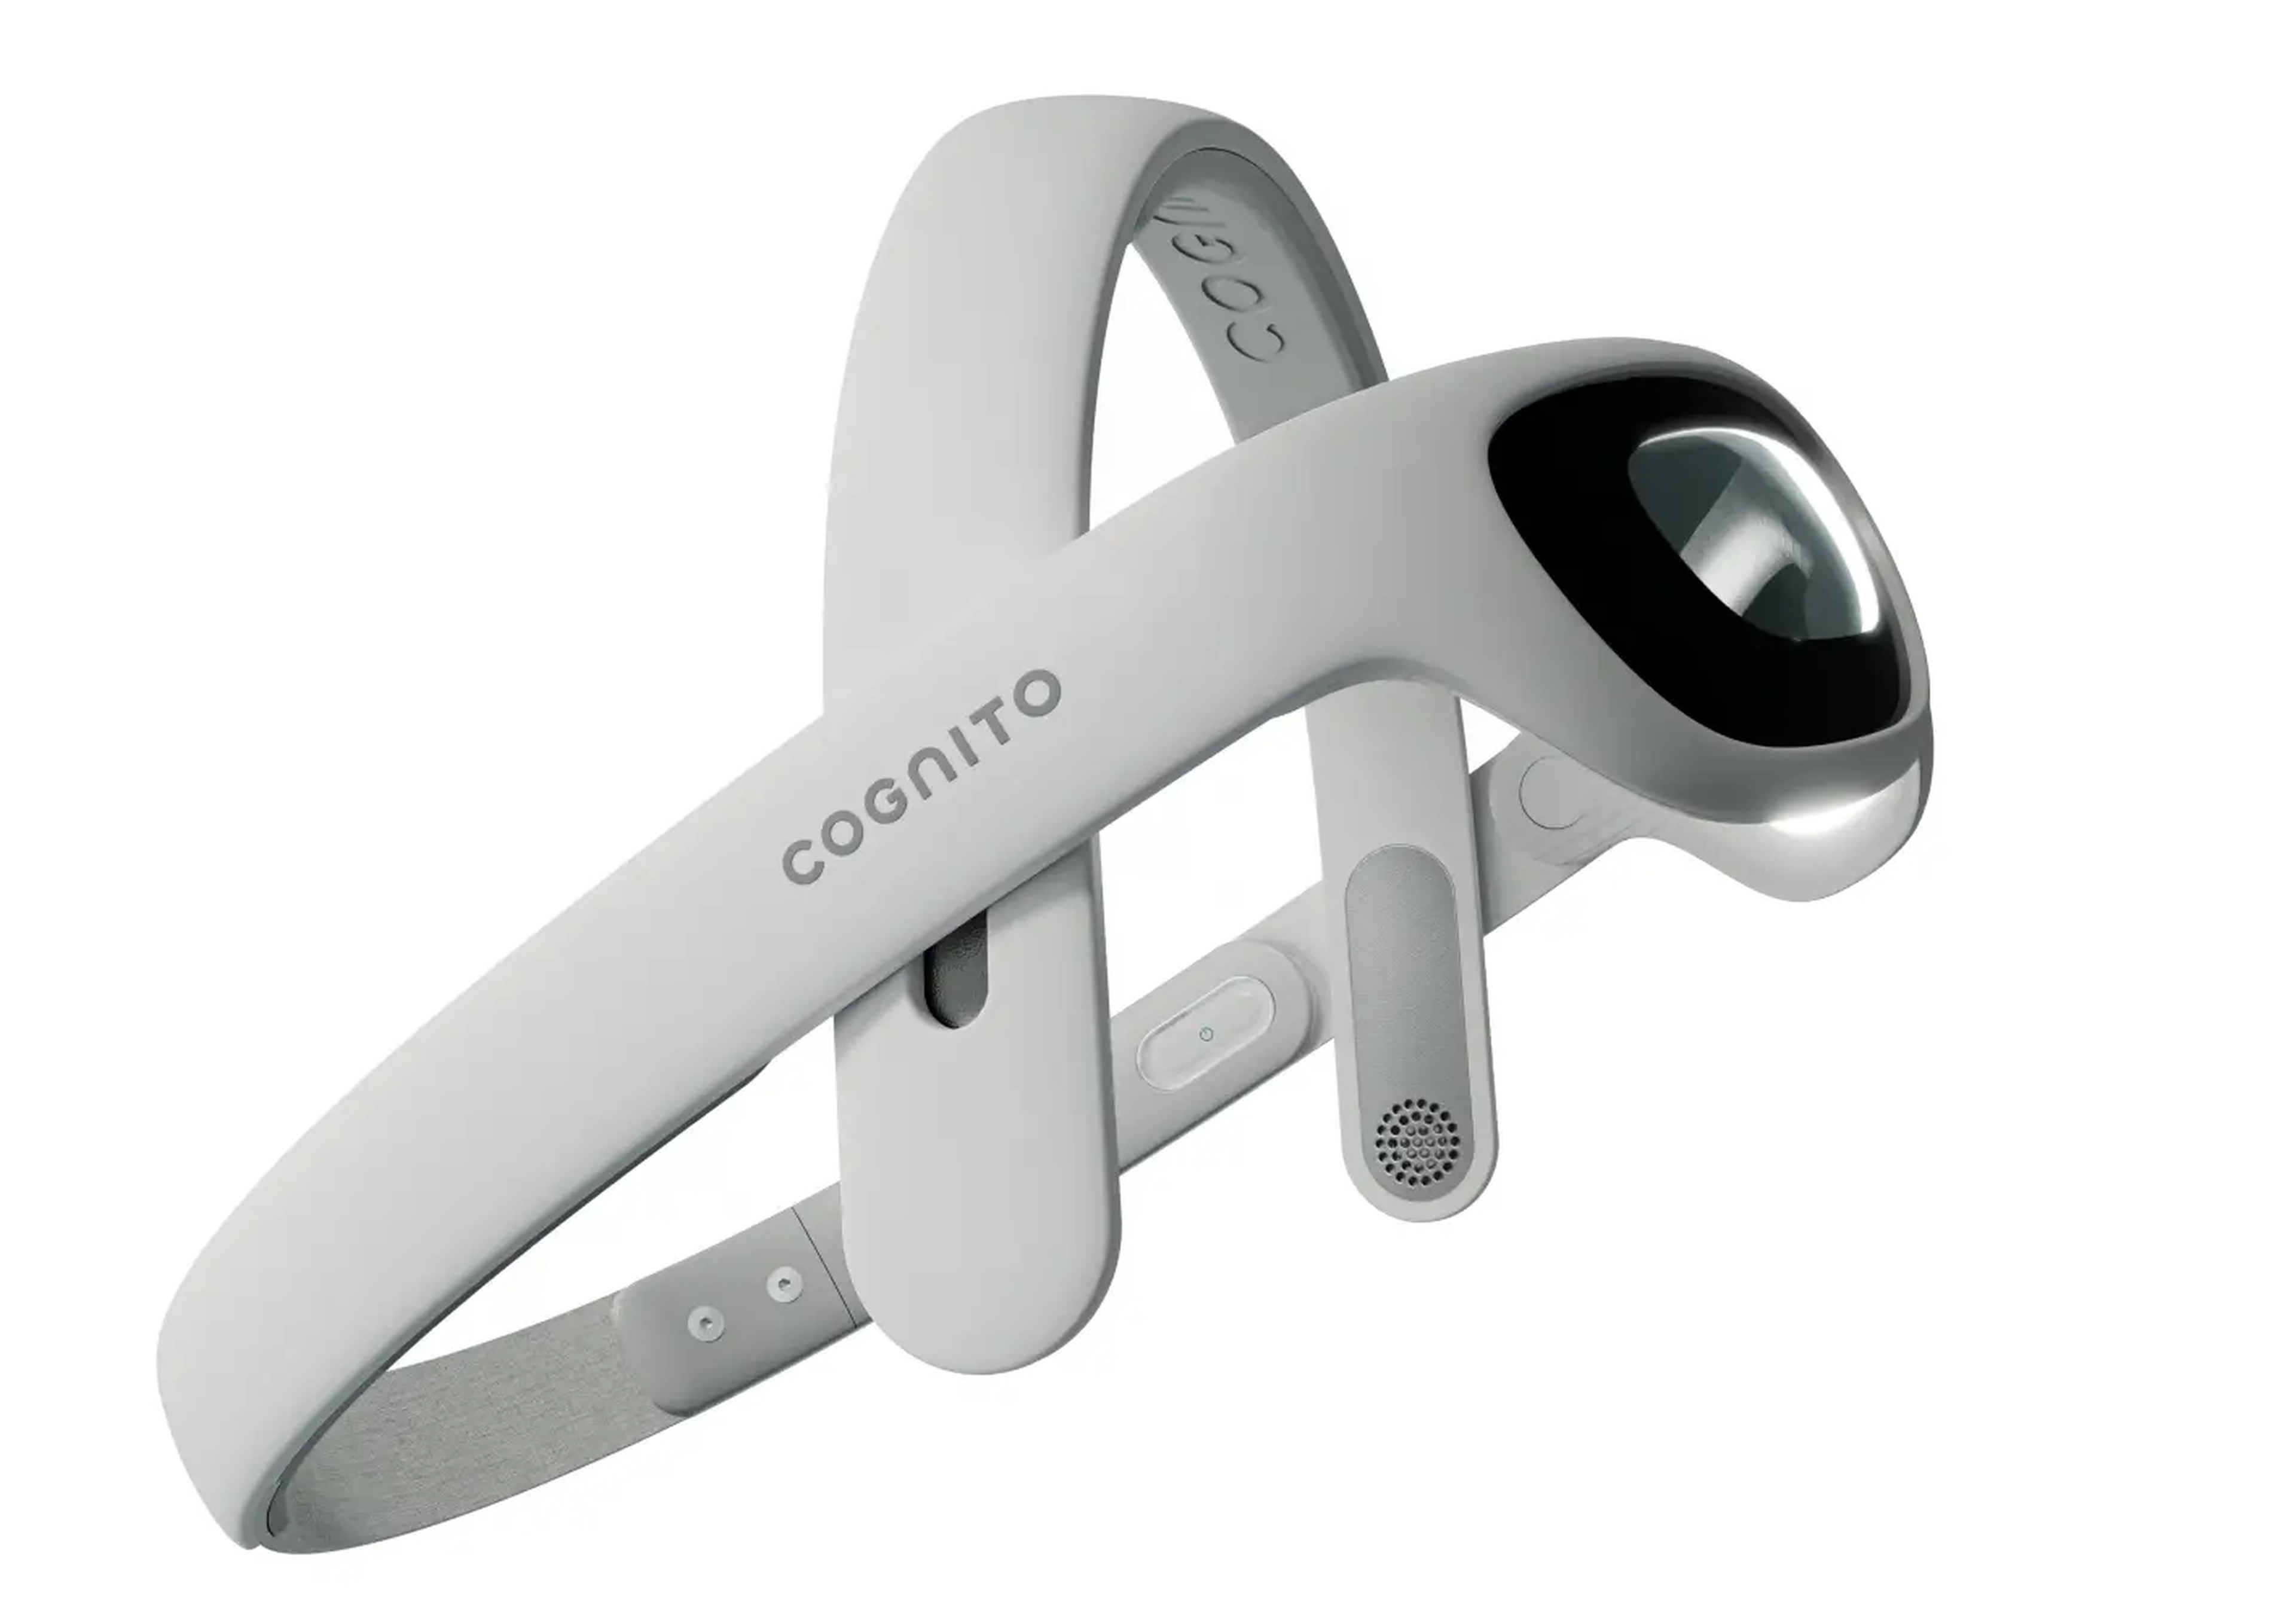 Los auriculares de Cognito utilizan la terapia de luz y sonido para estimular las ondas gamma.